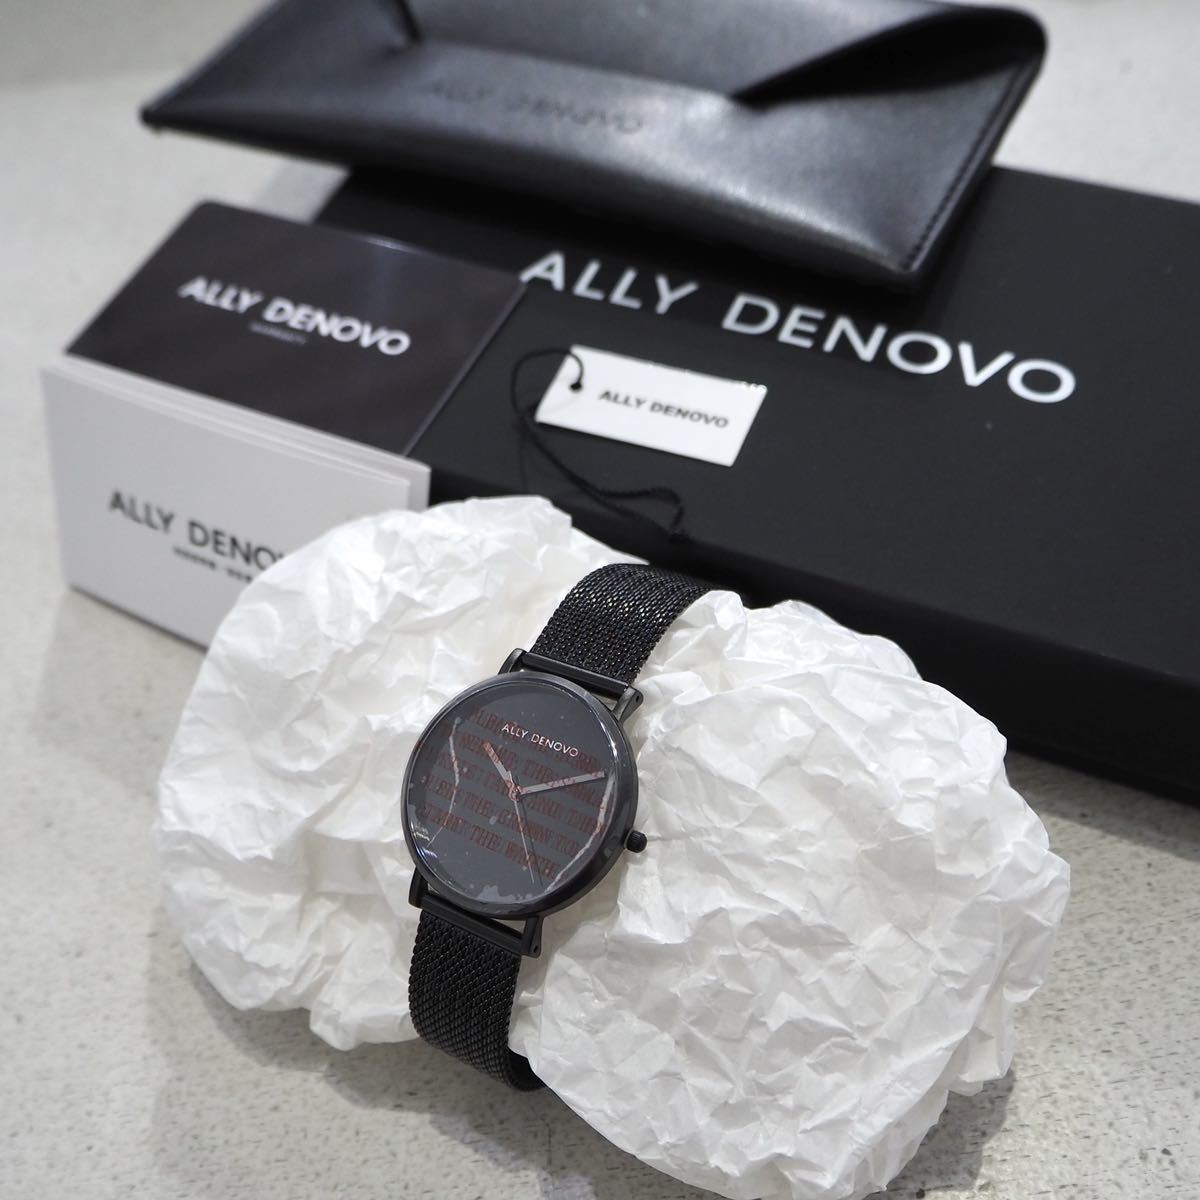 激安正規品 腕時計 デザイン 大理石 DENOVO ALLY スイス 定価22000円